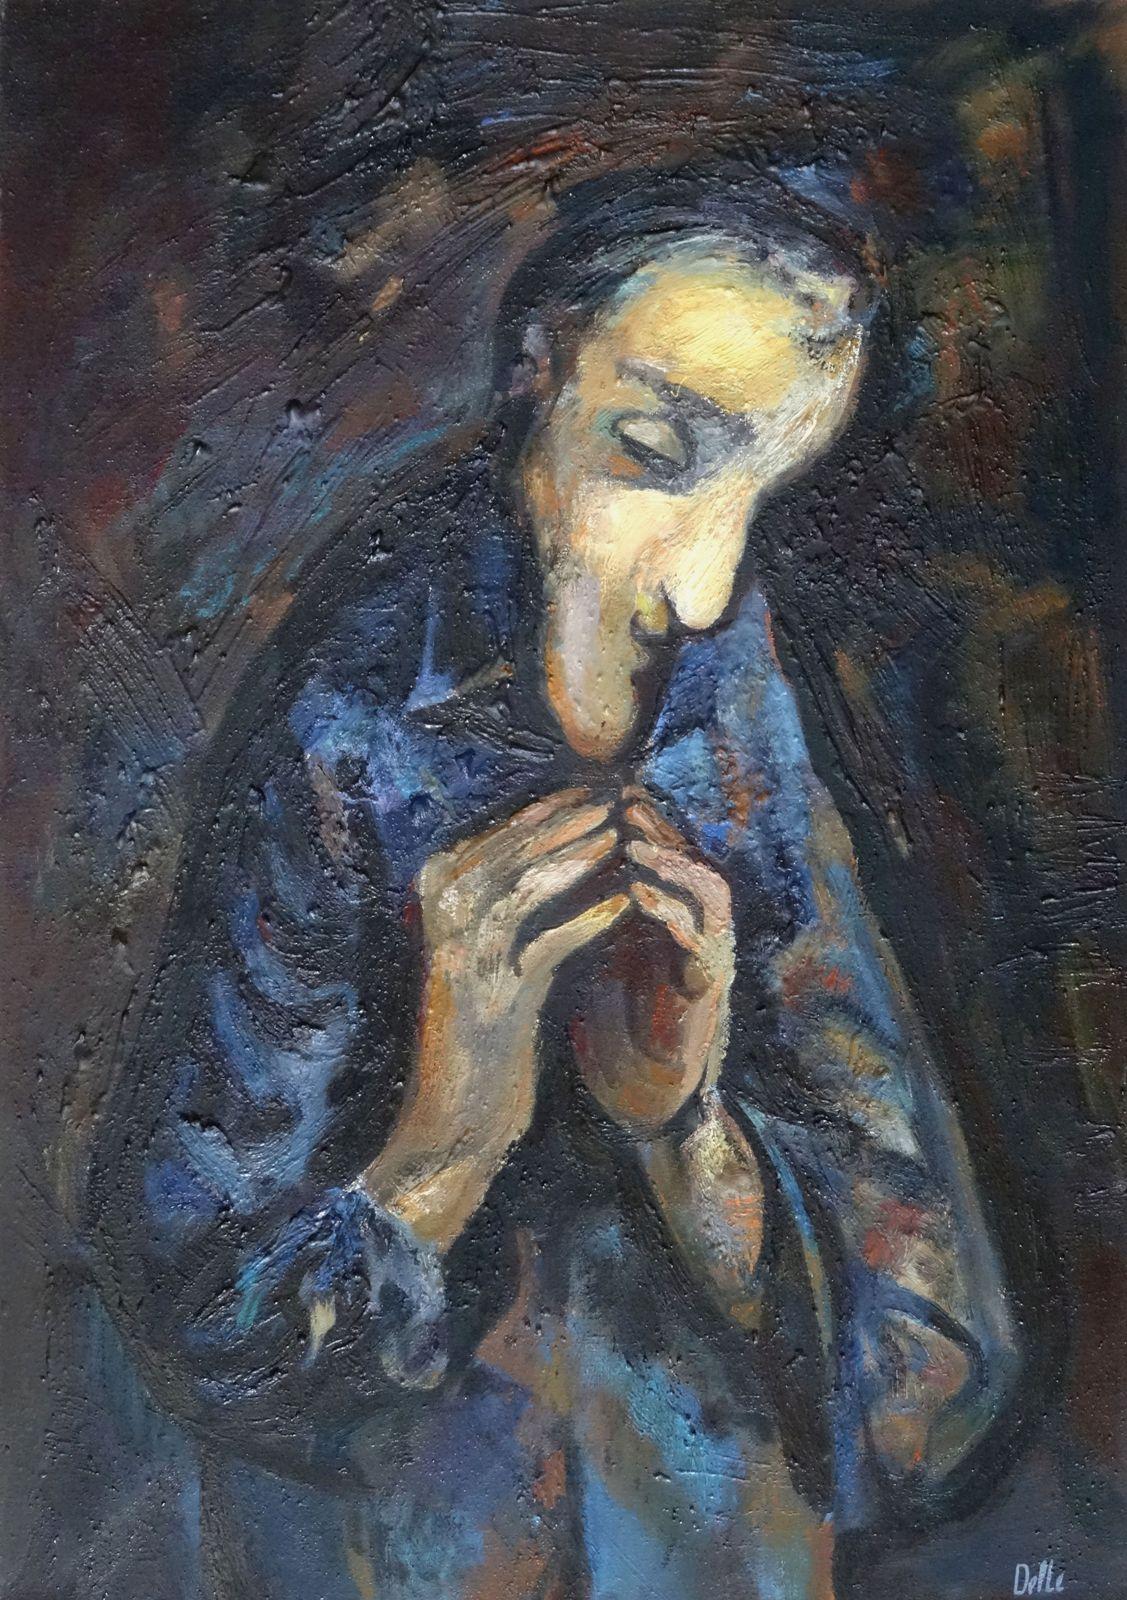 Biruta Delle Figurative Painting - Enlightenment. Oil on canvas, 92x65 cm